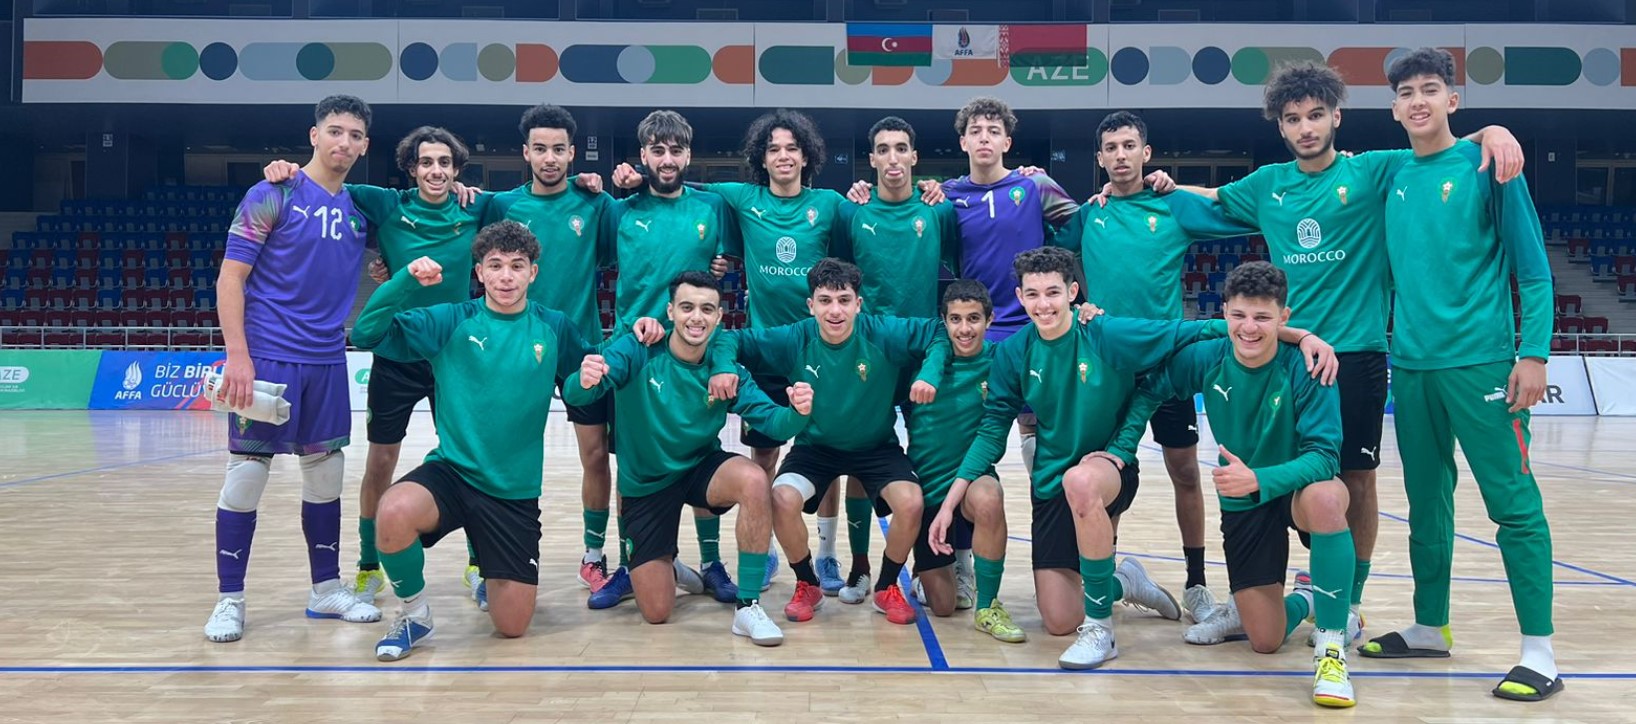 دوري حيضر ألييف لكرة القدم داخل القاعة : المنتخب الوطني لأقل من 19 عاما يفوز على منتخب أذربيجان  5-1